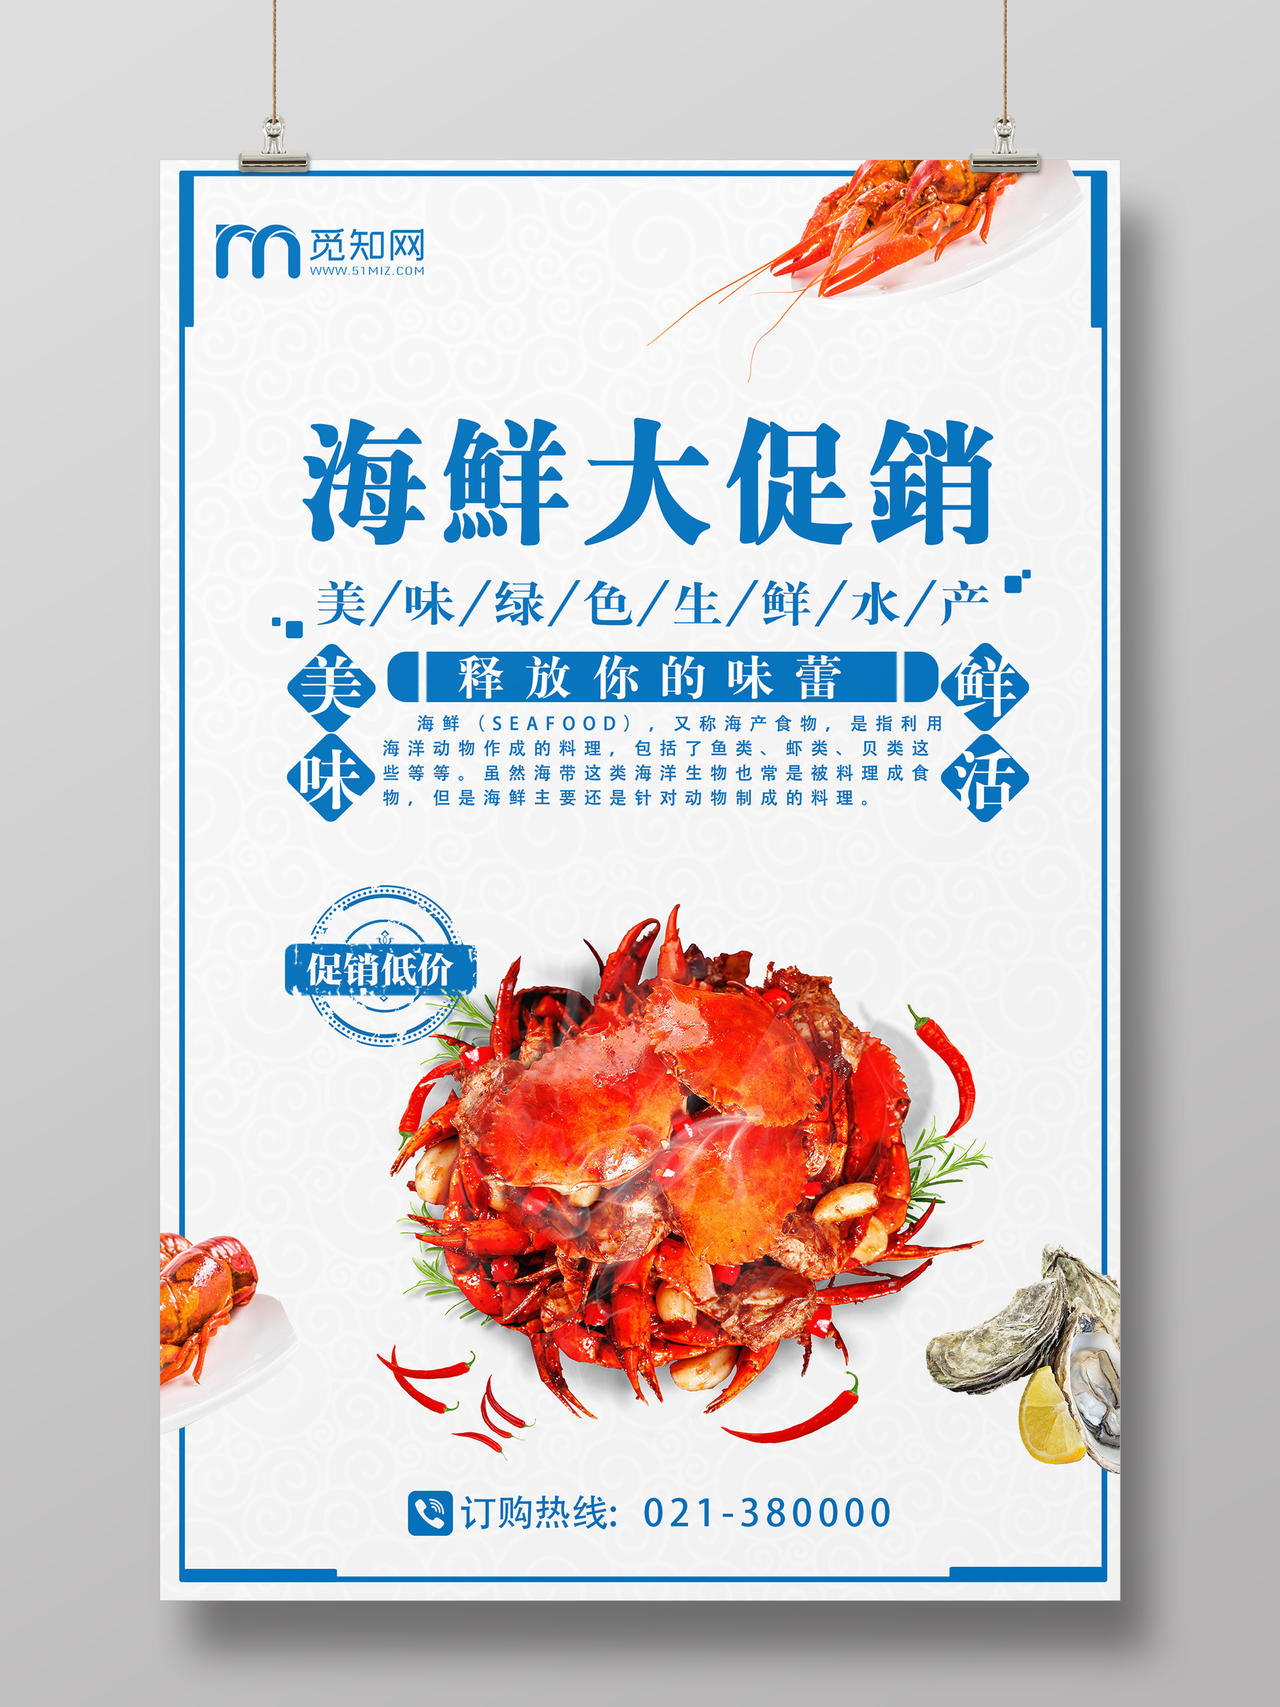 浅色简约大气水产海鲜大促销美食宣传单海报设计